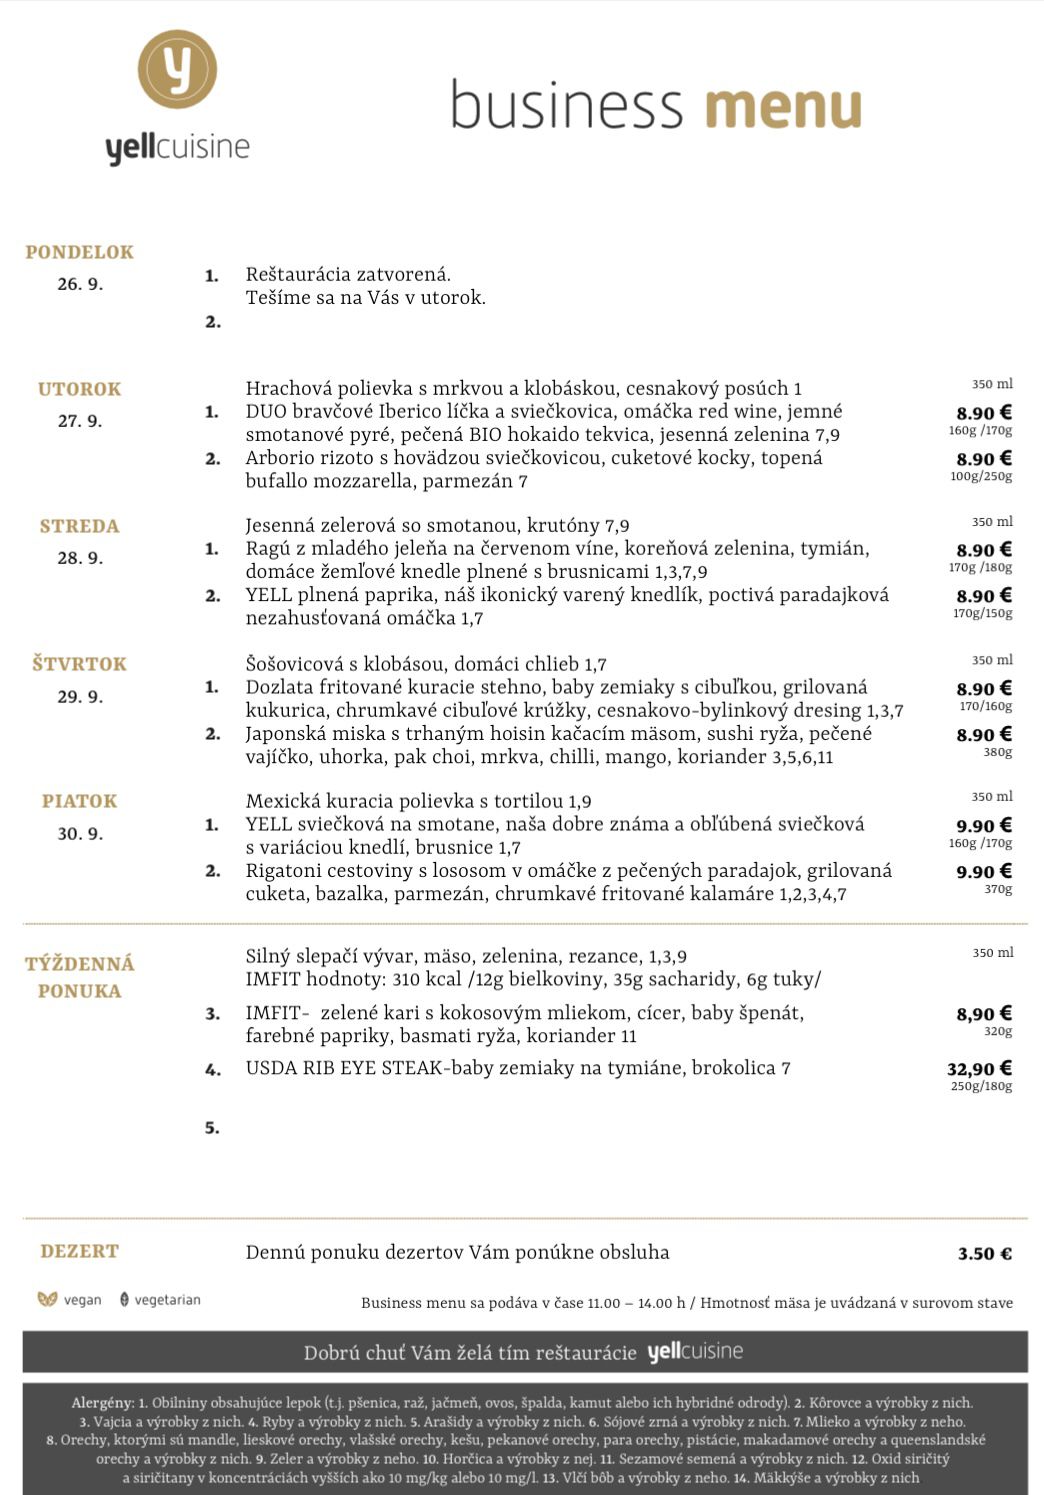 business menu ružomberok